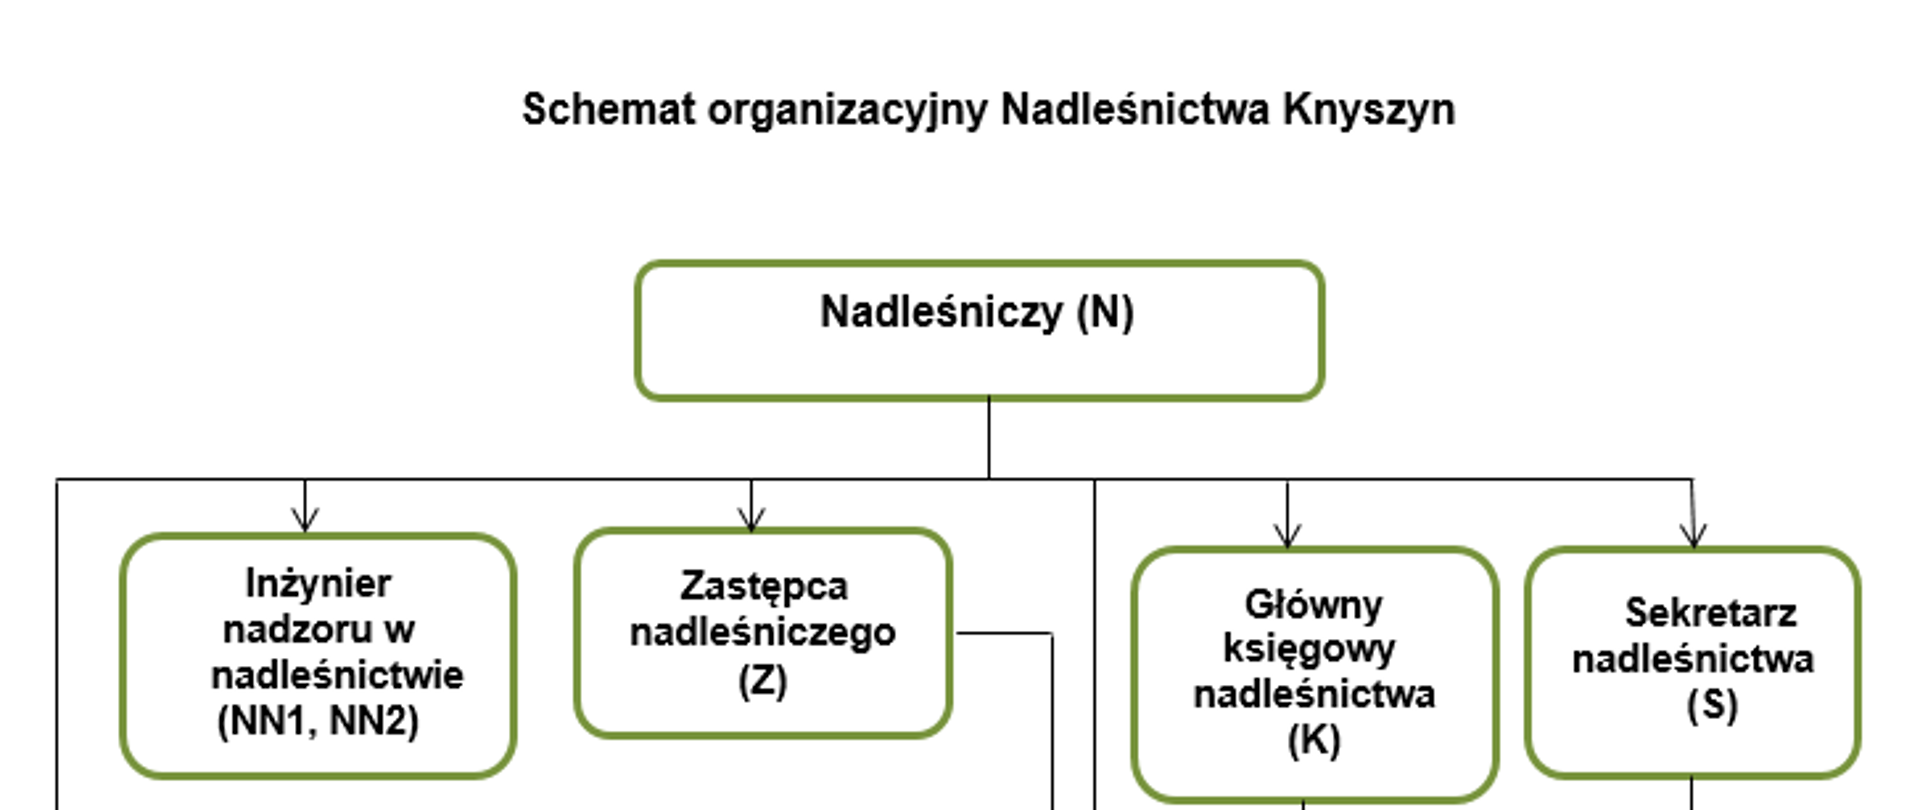 Zdjęcie przedstawia schemat organizacyjny Nadleśnictwa Knyszyn